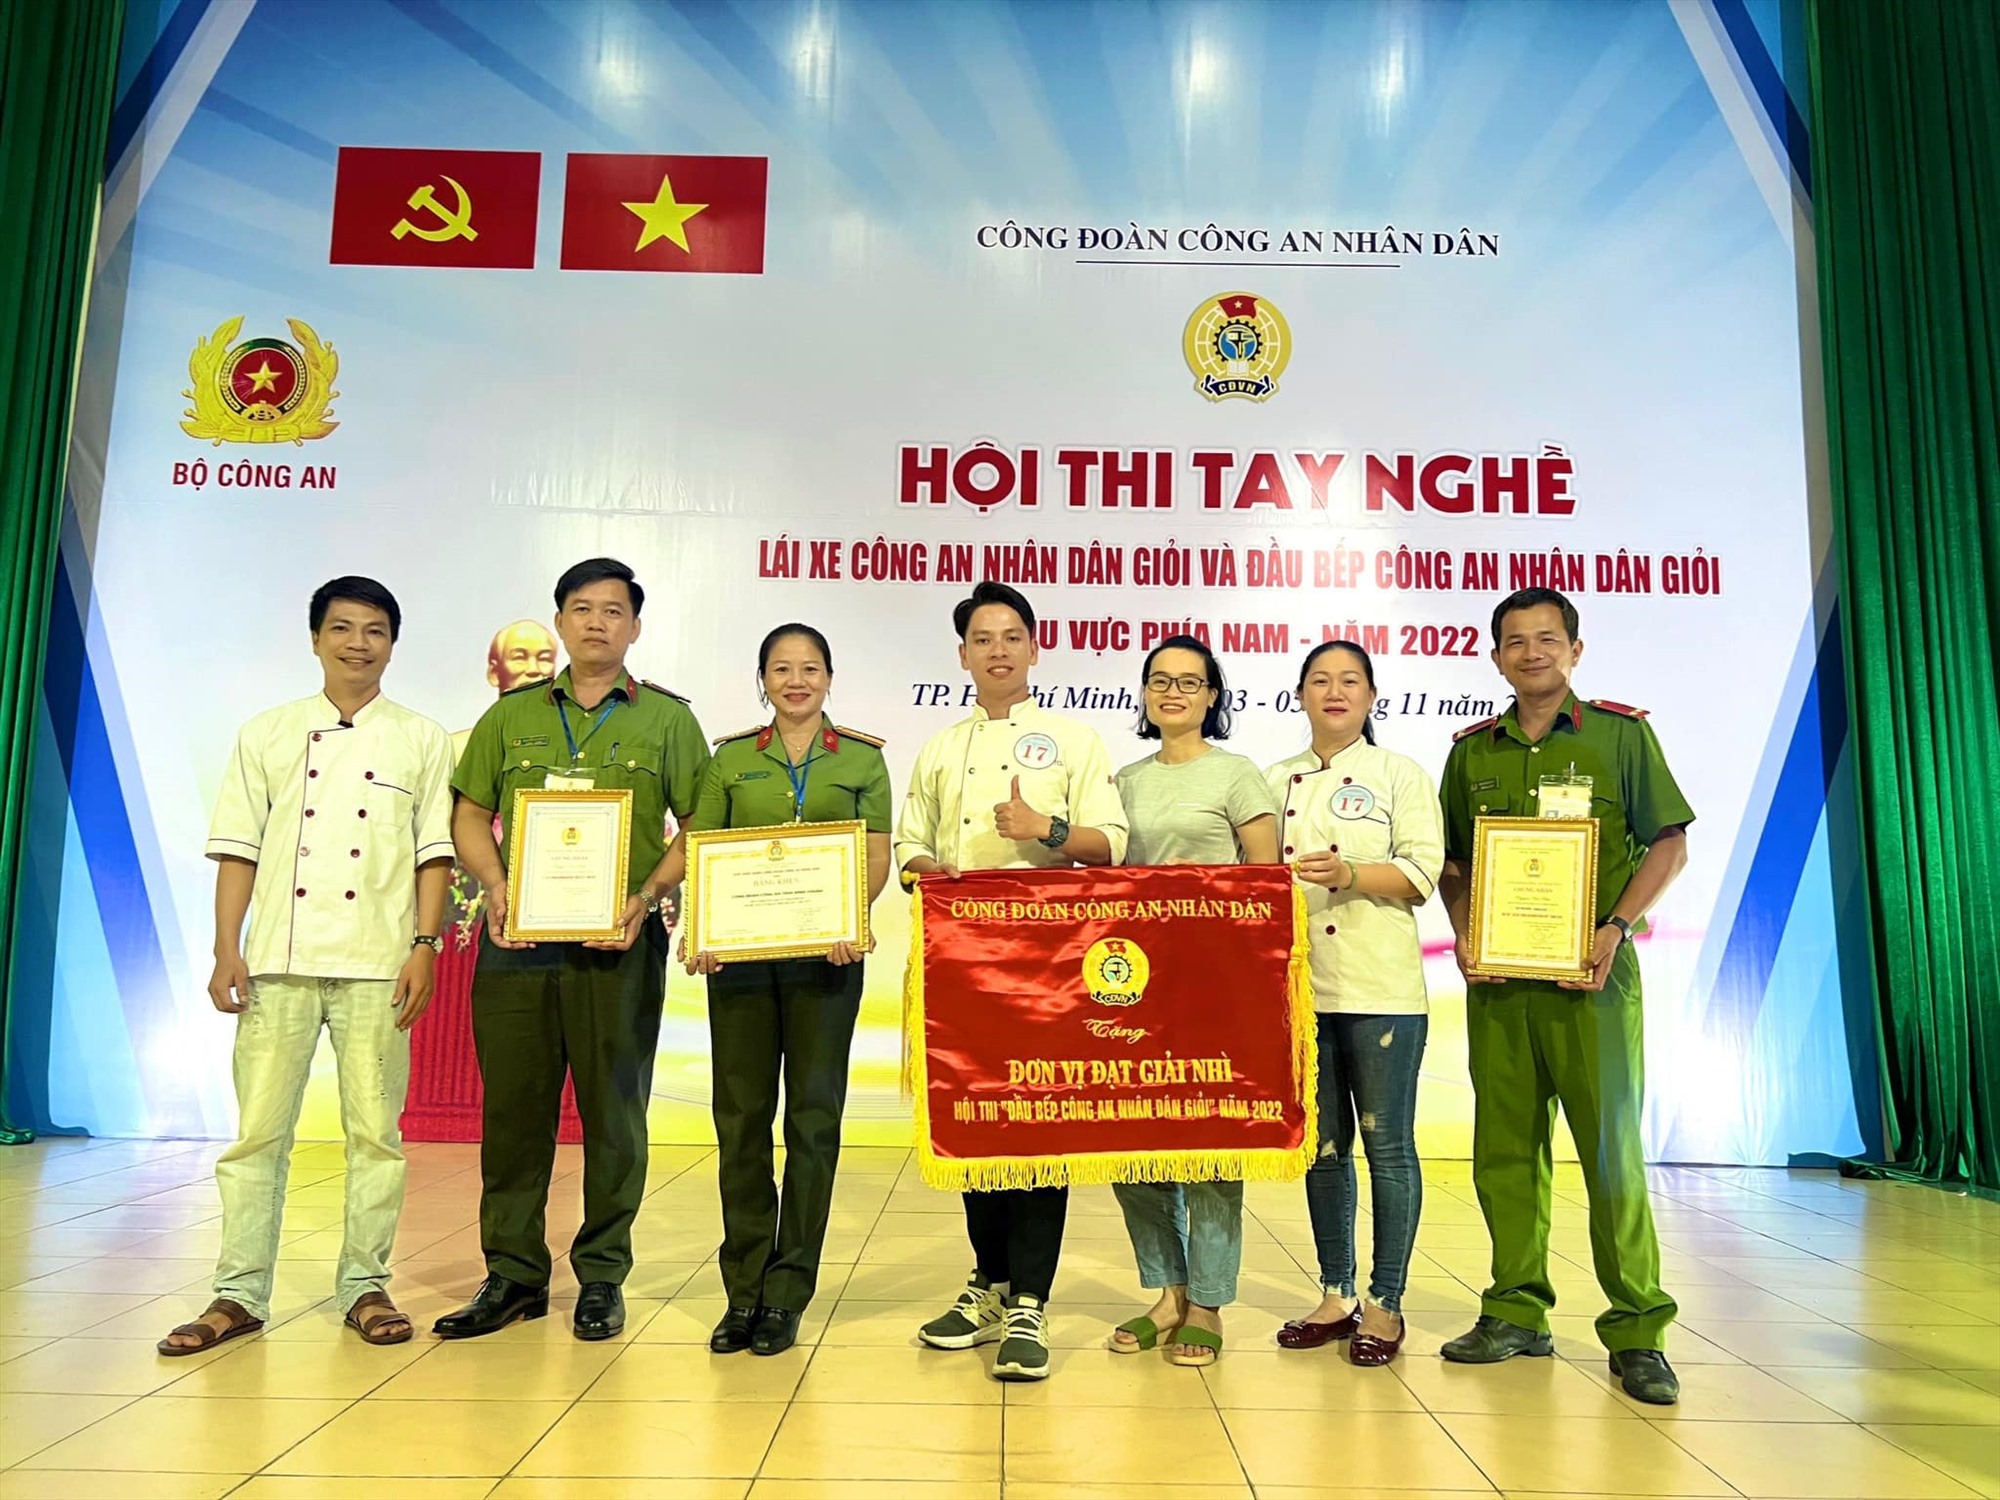 Công đoàn Công an Bình Thuận đạt giải cao trong hội thi do Công đoàn CAND tổ chức. Ảnh: Phạm Duy